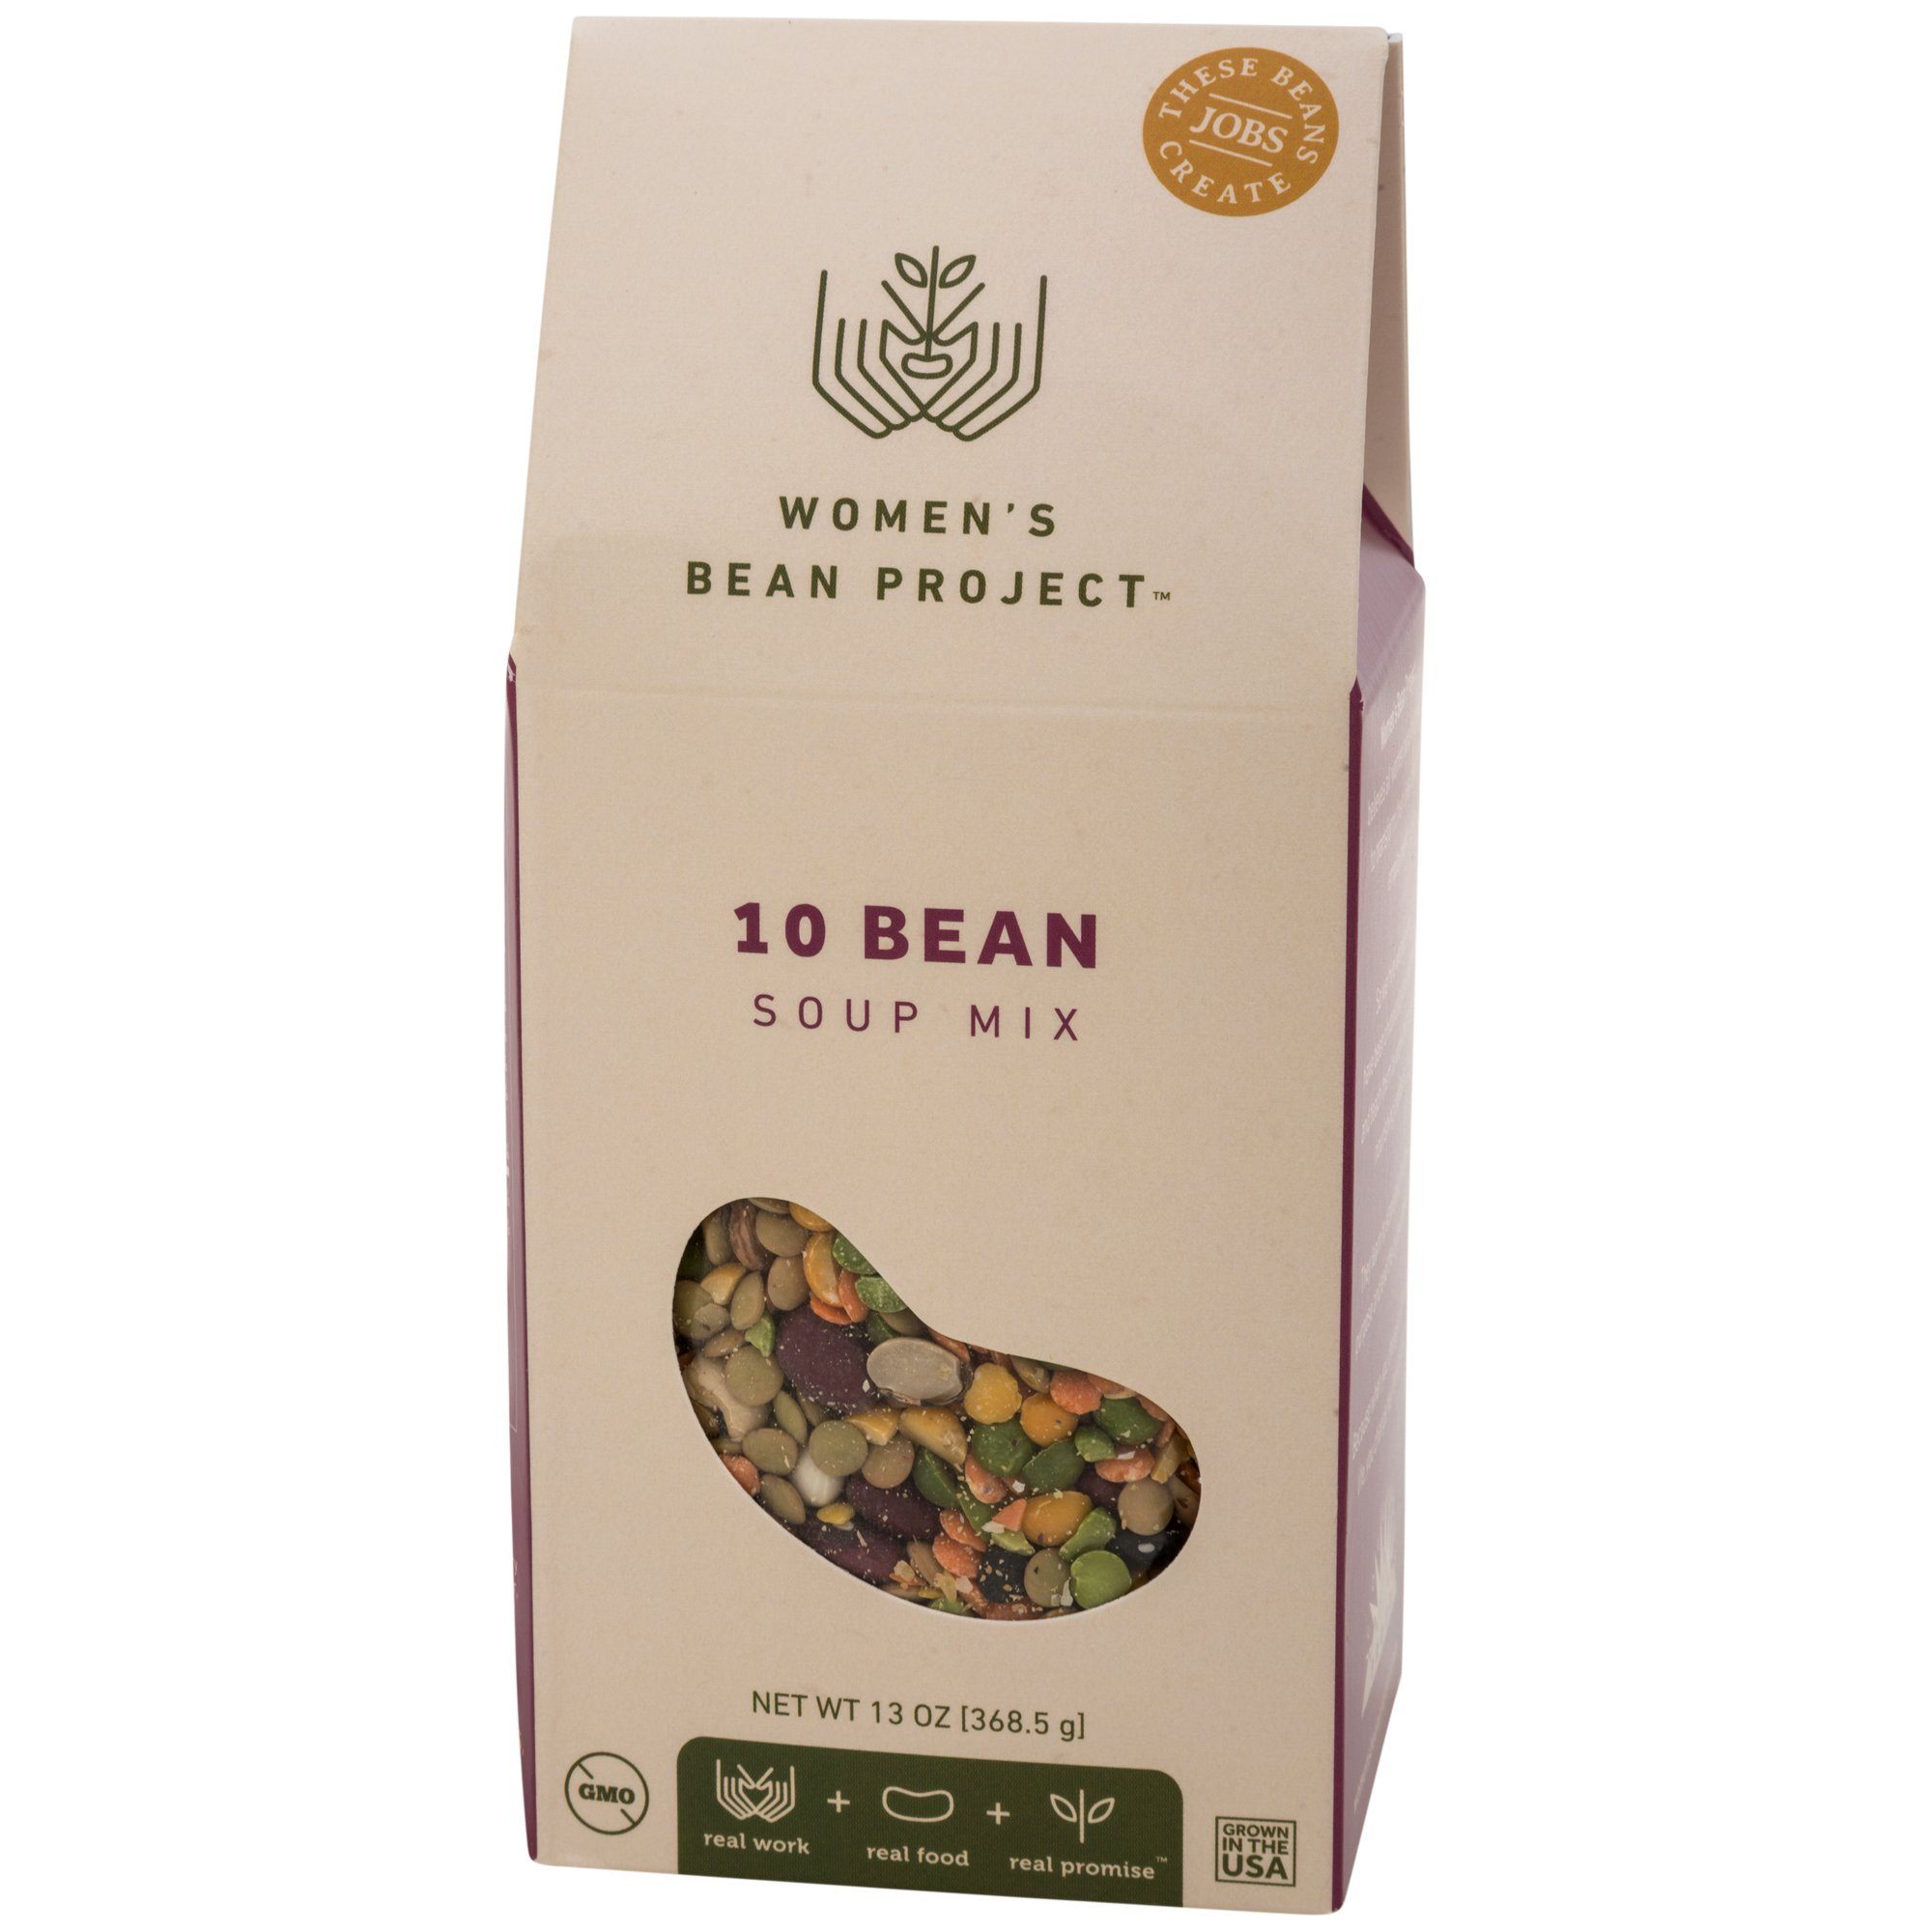 Women's Bean Project Soup Mix - 10 Bean